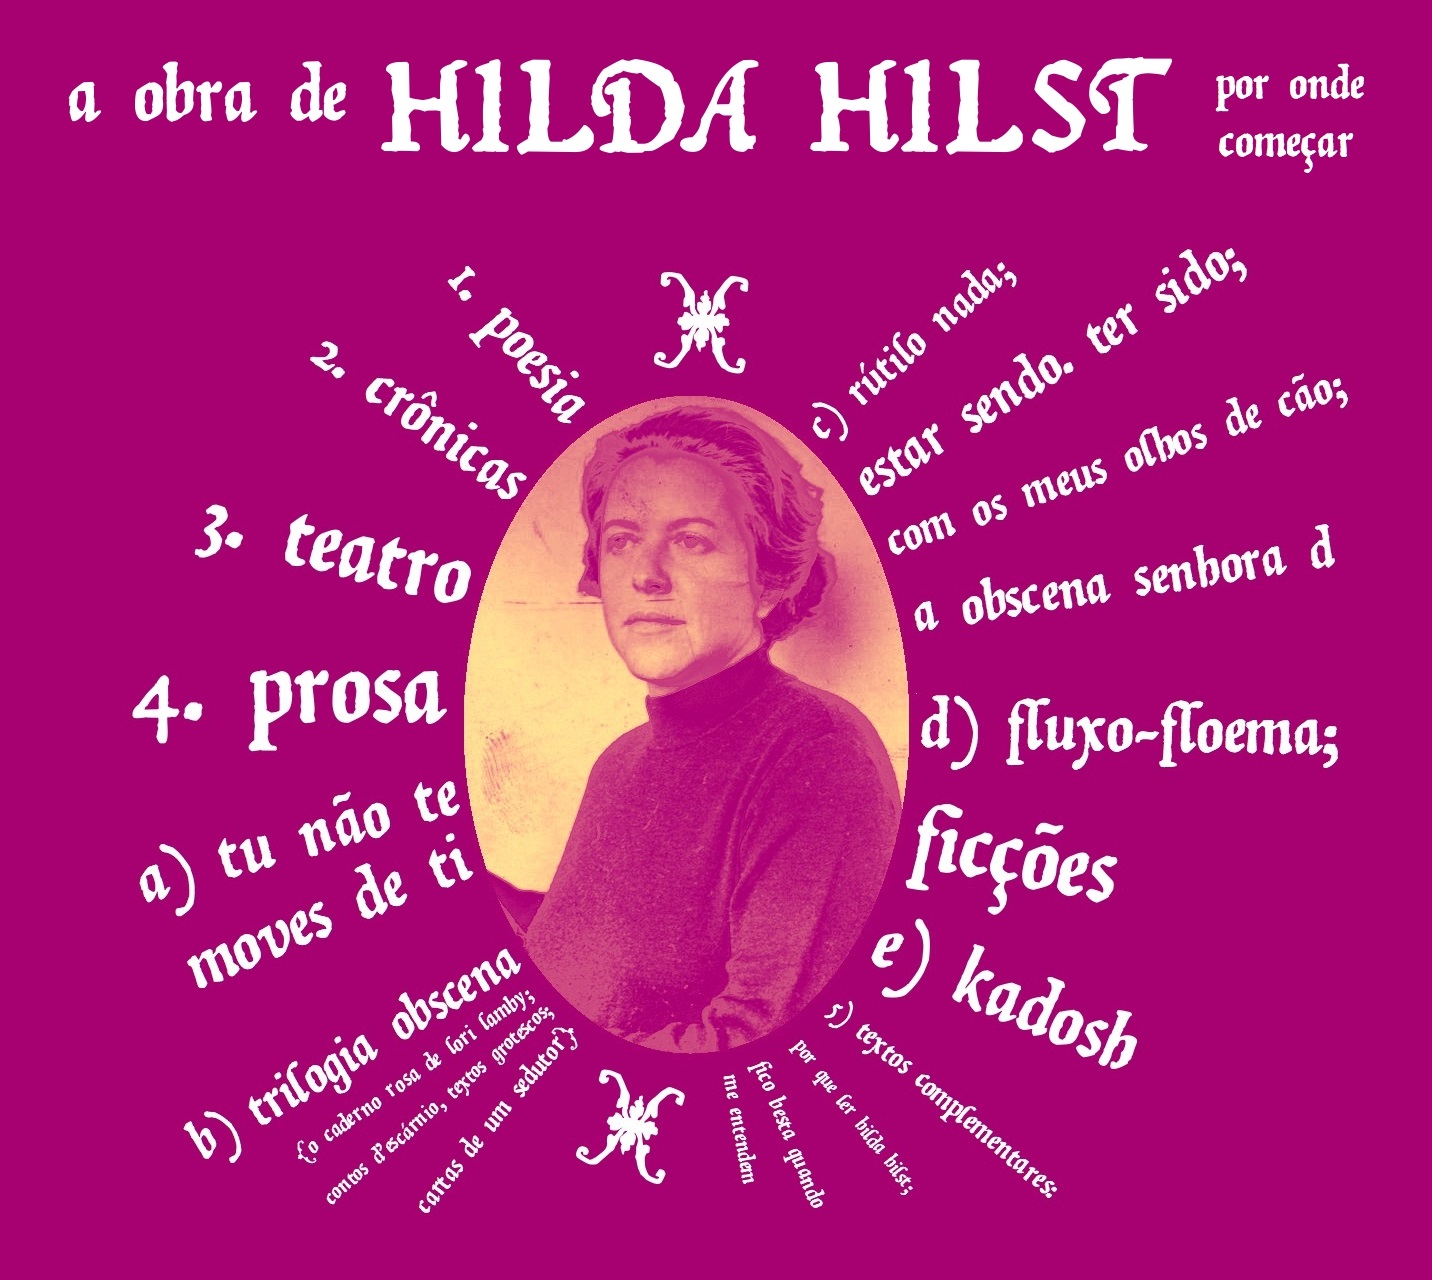 Hilda obra